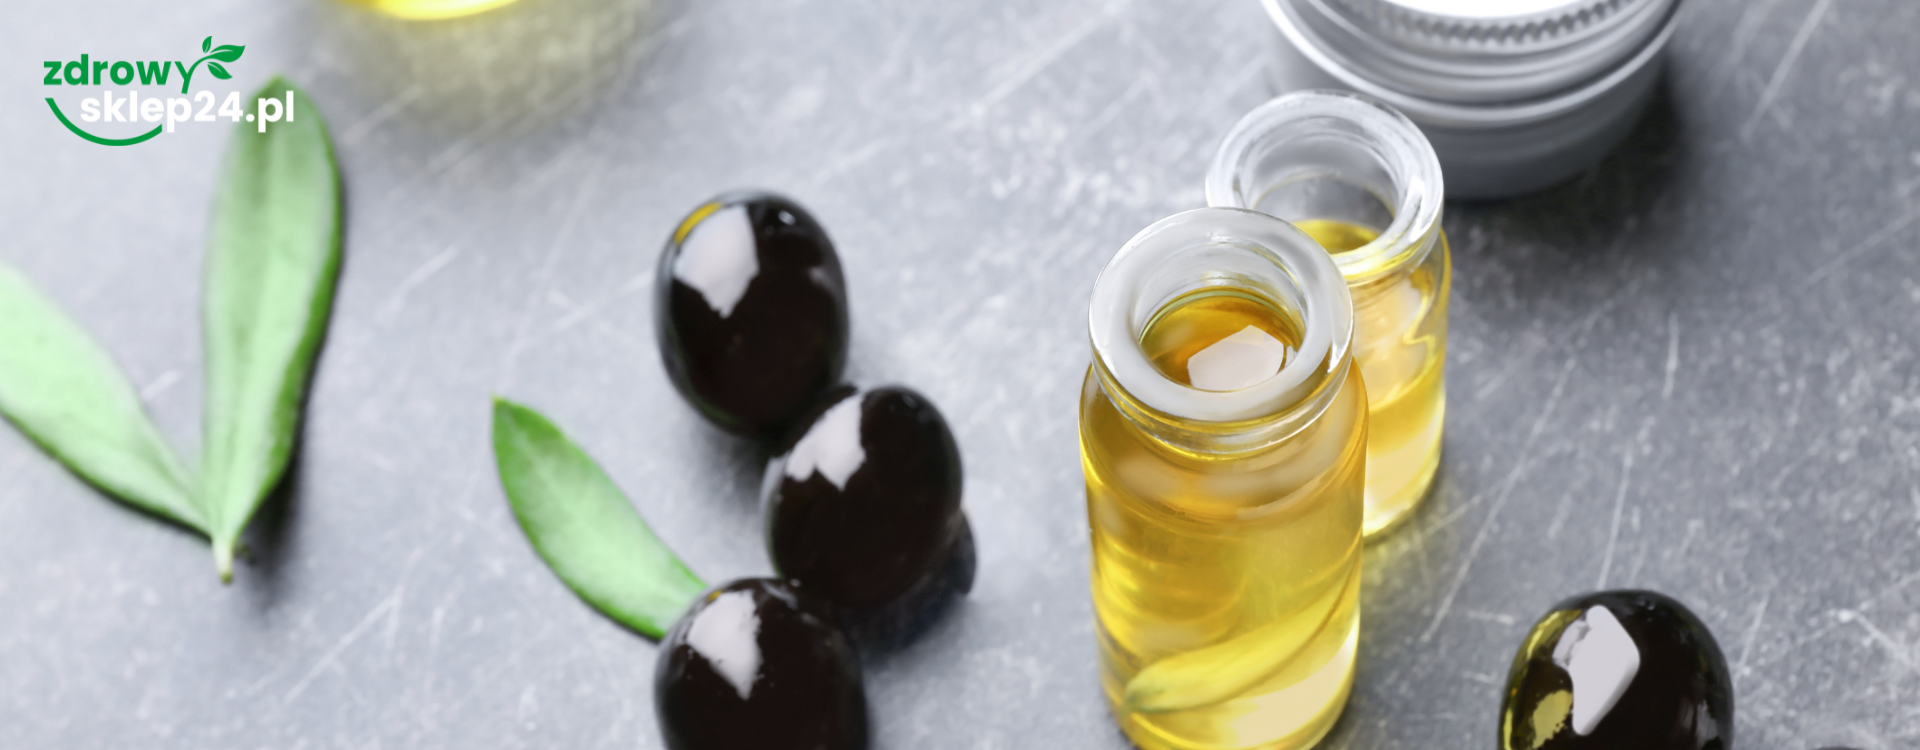 Jaka oliwa stanowi składnik kosmetyków?